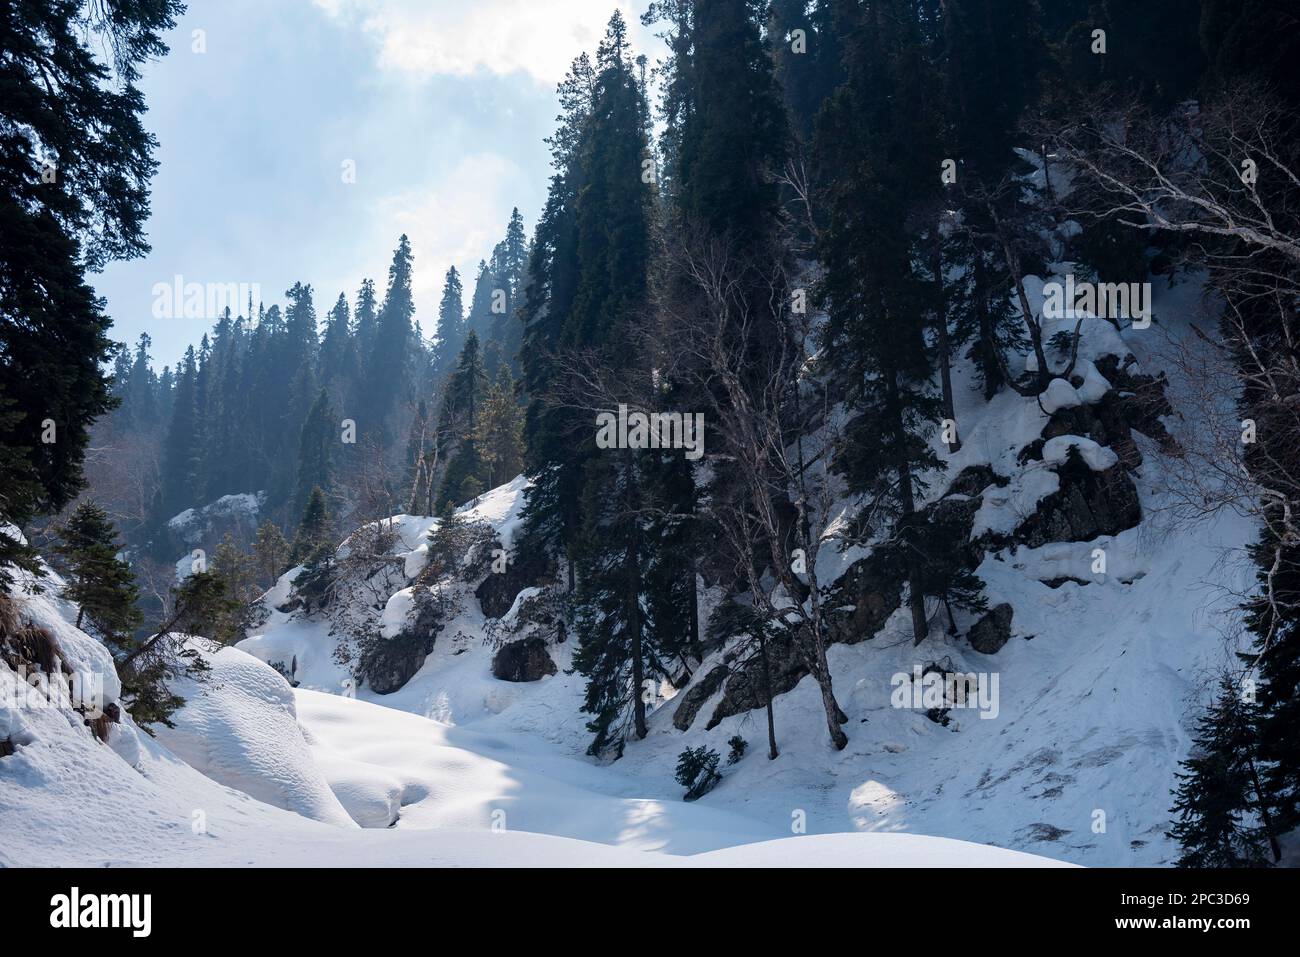 Una montagna è vista coperta di neve oltre i pini durante una giornata di sole a Bubjen ad un'altitudine di 2985 m sulle montagne dell'Himalaya. La catena montuosa di Zabarwan è una breve catena montuosa situata tra il PIR Panjal e il Great Himalayan Range, nella parte centrale della valle del Kashmir. La vetta più alta della catena montuosa di Zabarwan è Mahadev Peak a 13.013 piedi (3.966 m). La gamma Zabarwan ha rocce cristalline come granito, scisti e filliti con pietra calcarea incorporata, che formano il nucleo della sua gamma madre. Inoltre la catena montuosa di Zabarwan possiede una grande catena montuosa dell'Himalaya con una ricca fauna selvatica. Foto Stock